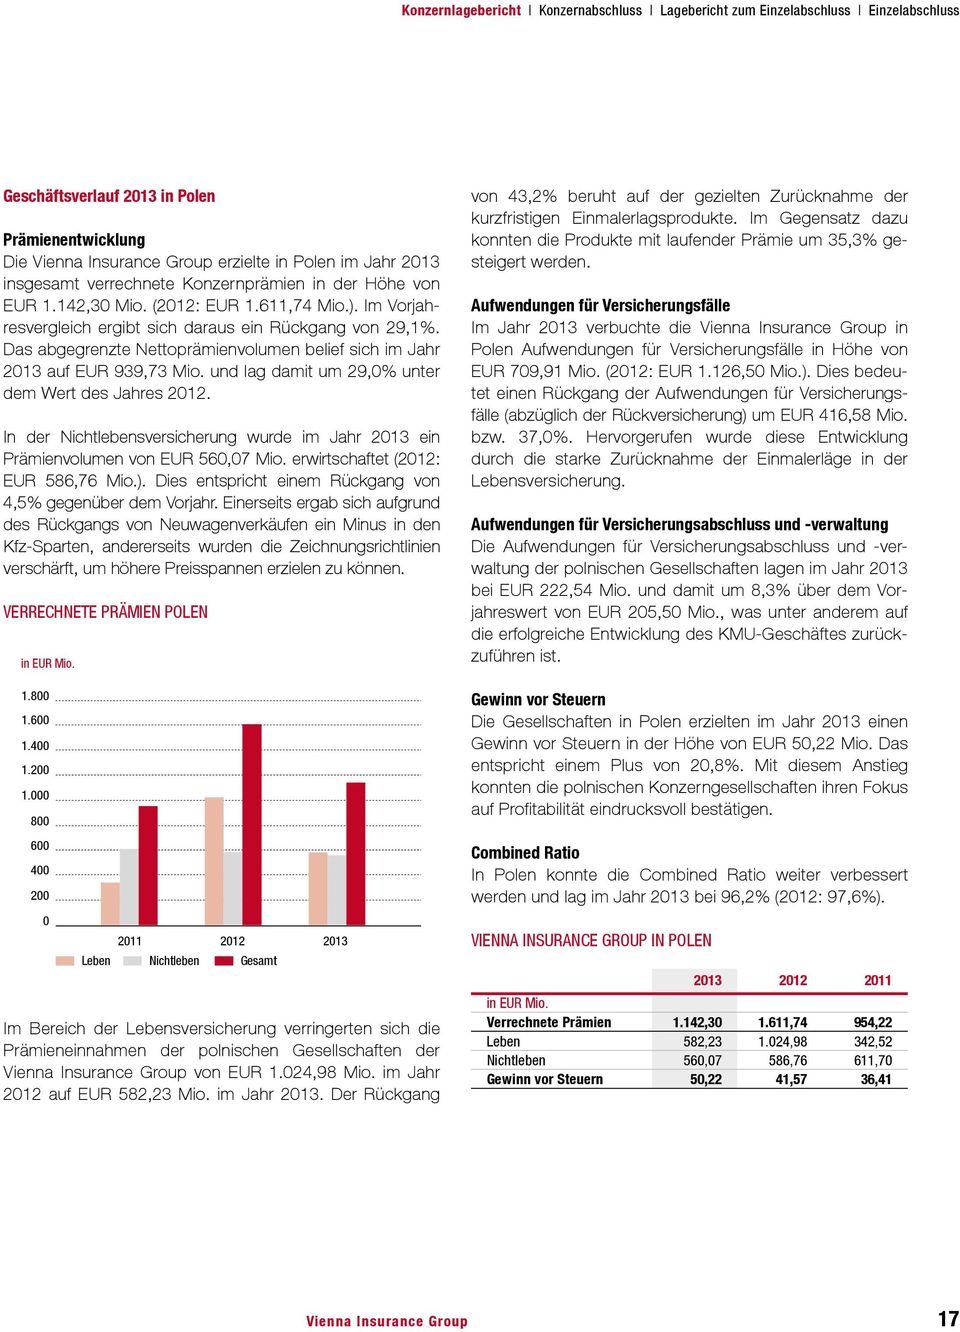 Das abgegrenzte Nettoprämienvolumen belief sich im Jahr 2013 auf EUR 939,73 Mio. und lag damit um 29,0% unter dem Wert des Jahres 2012.